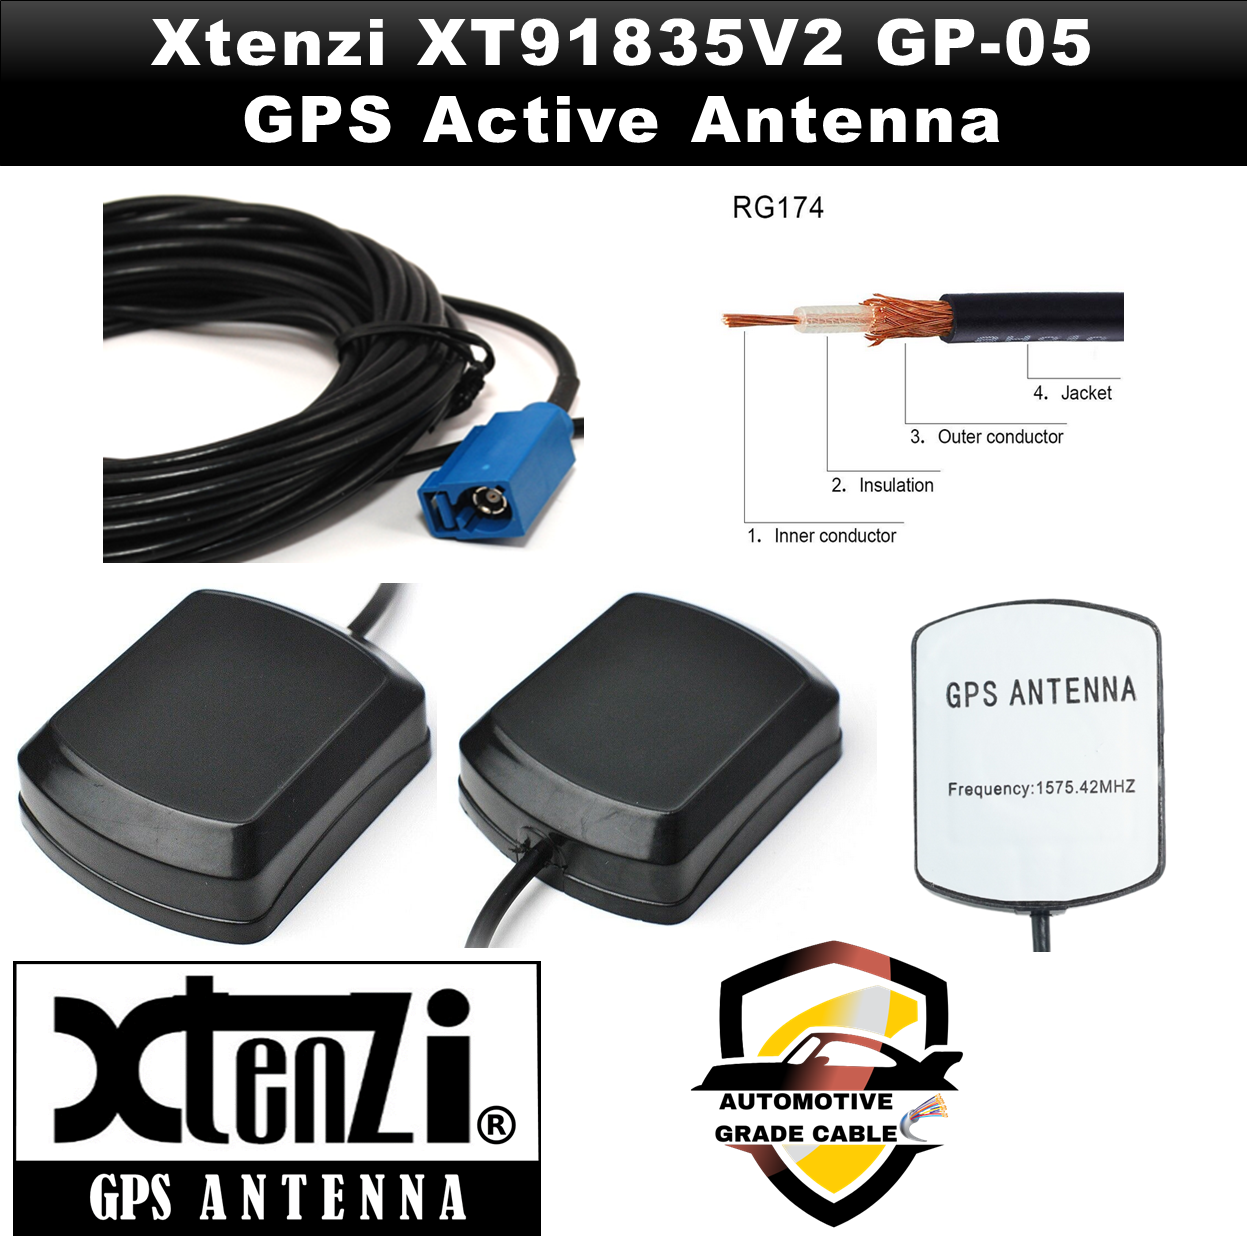 Xtenzi GPS Active Antenna XT91835V2 Car Navigation Receiver for Sony XA-NV400